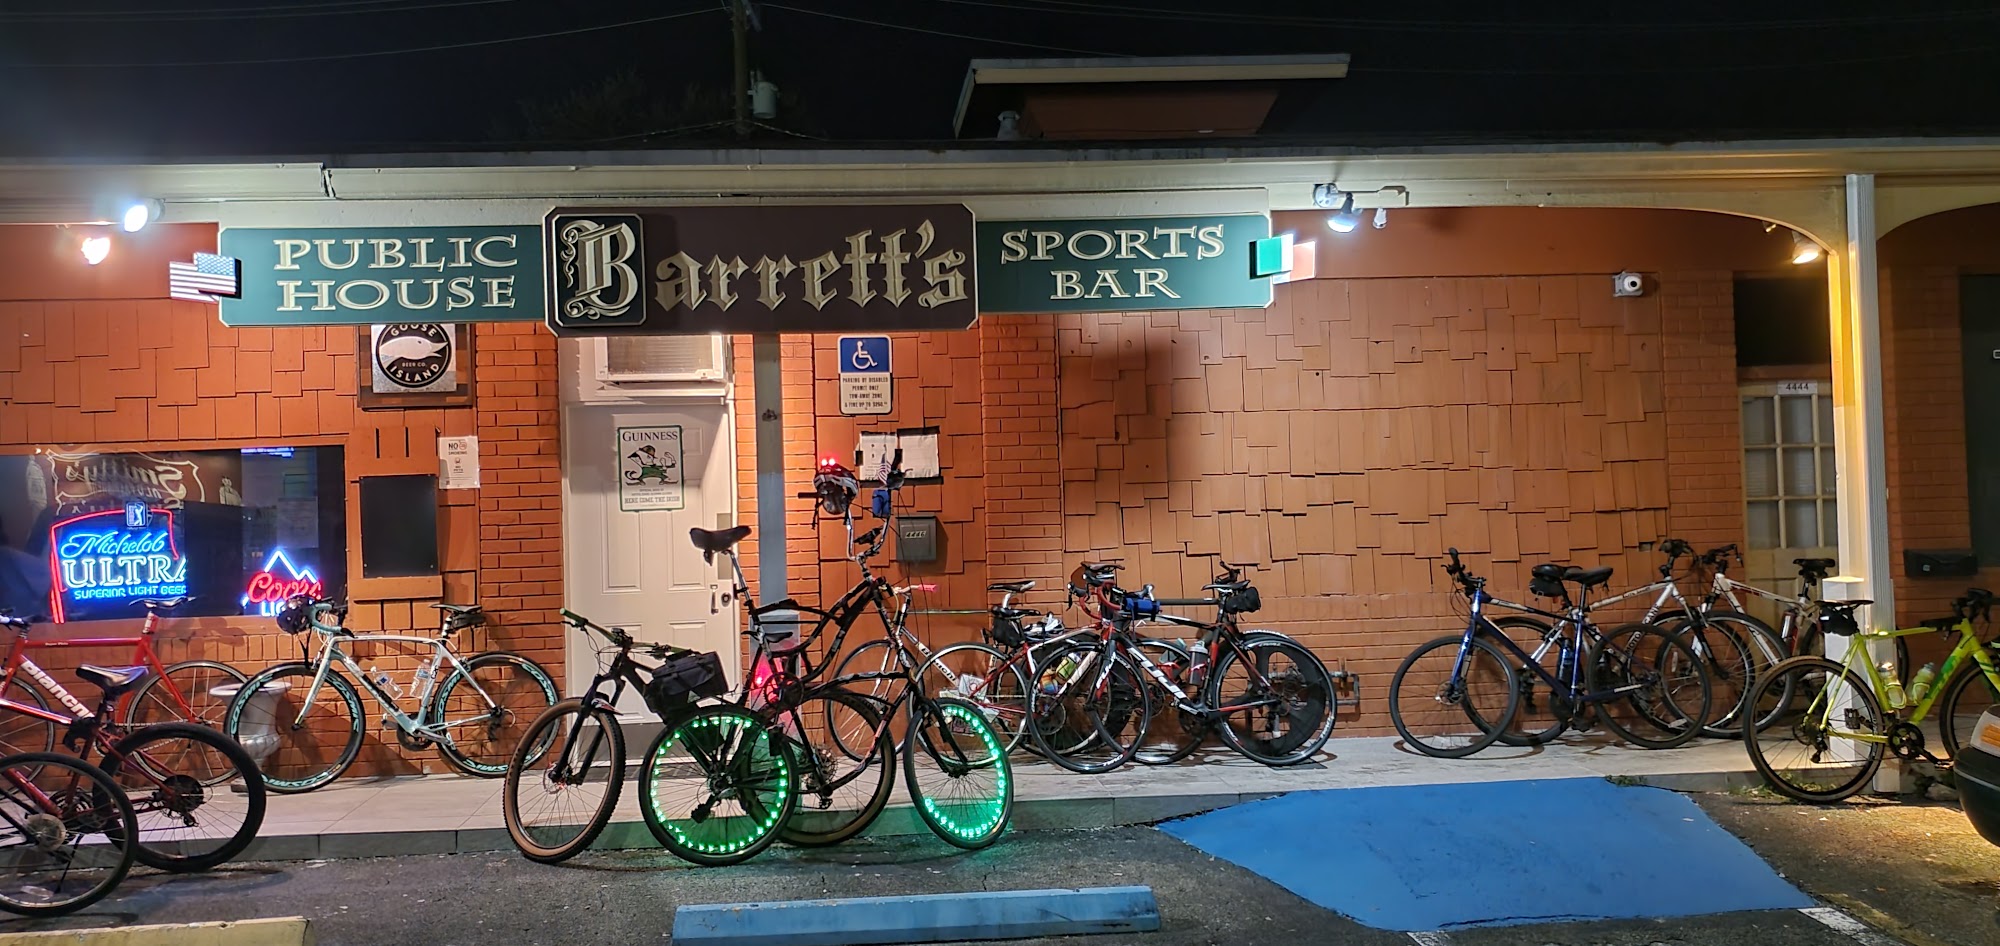 Barrett's Sports Bar